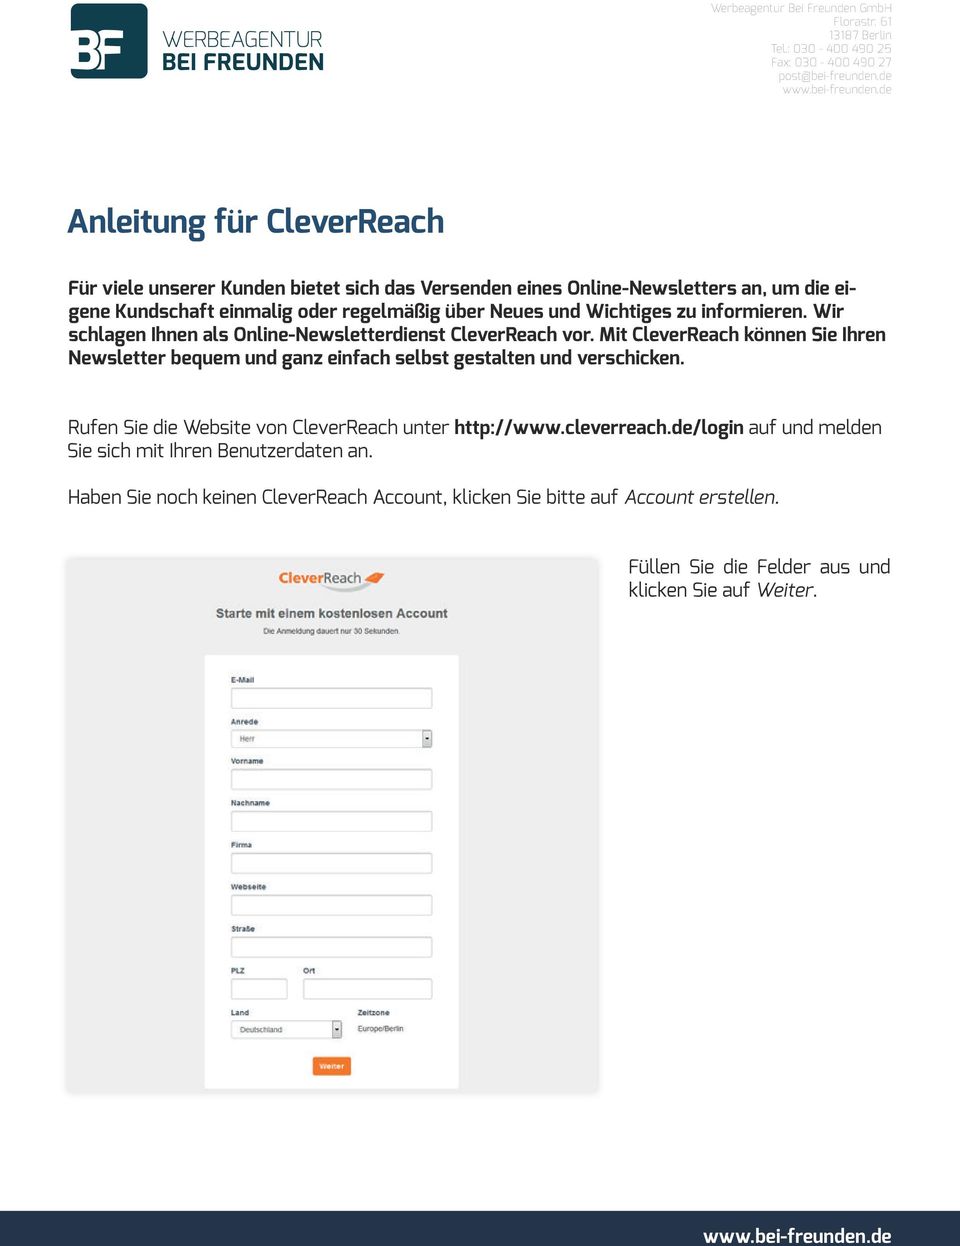 Mit CleverReach können Sie Ihren Newsletter bequem und ganz einfach selbst gestalten und verschicken. Rufen Sie die Website von CleverReach unter http://www.